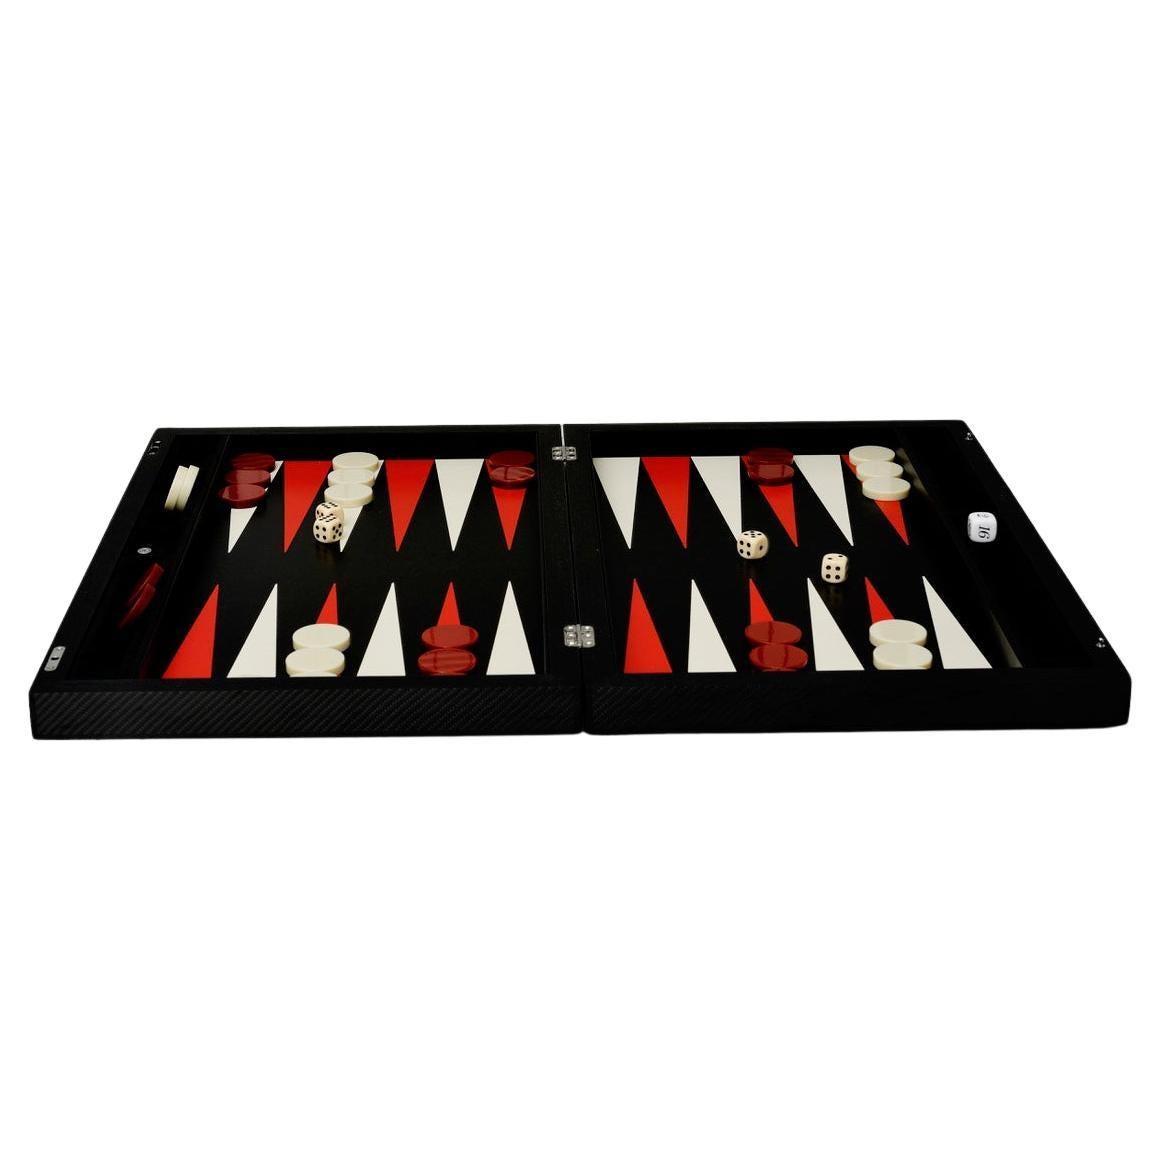  Backgammon Carbon Elie Bleu Paris  For Sale